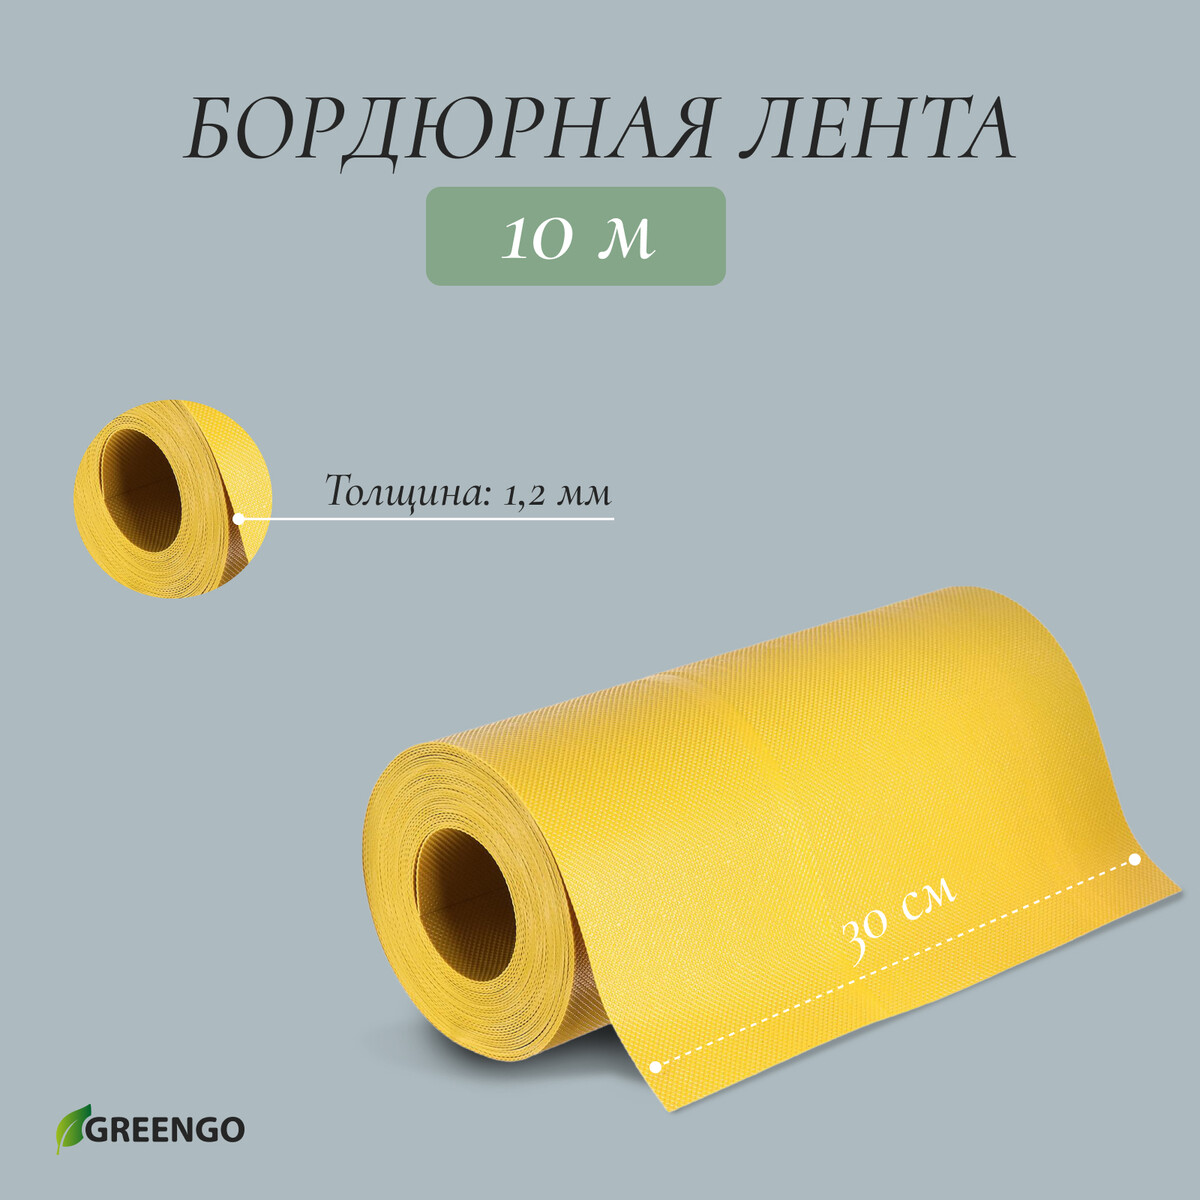 Лента бордюрная, 0.3 × 10 м, толщина 1.2 мм, пластиковая, желтая, greengo лента бордюрная 0 2 × 9 м толщина 1 2 мм пластиковая фигурная коричневая greengo